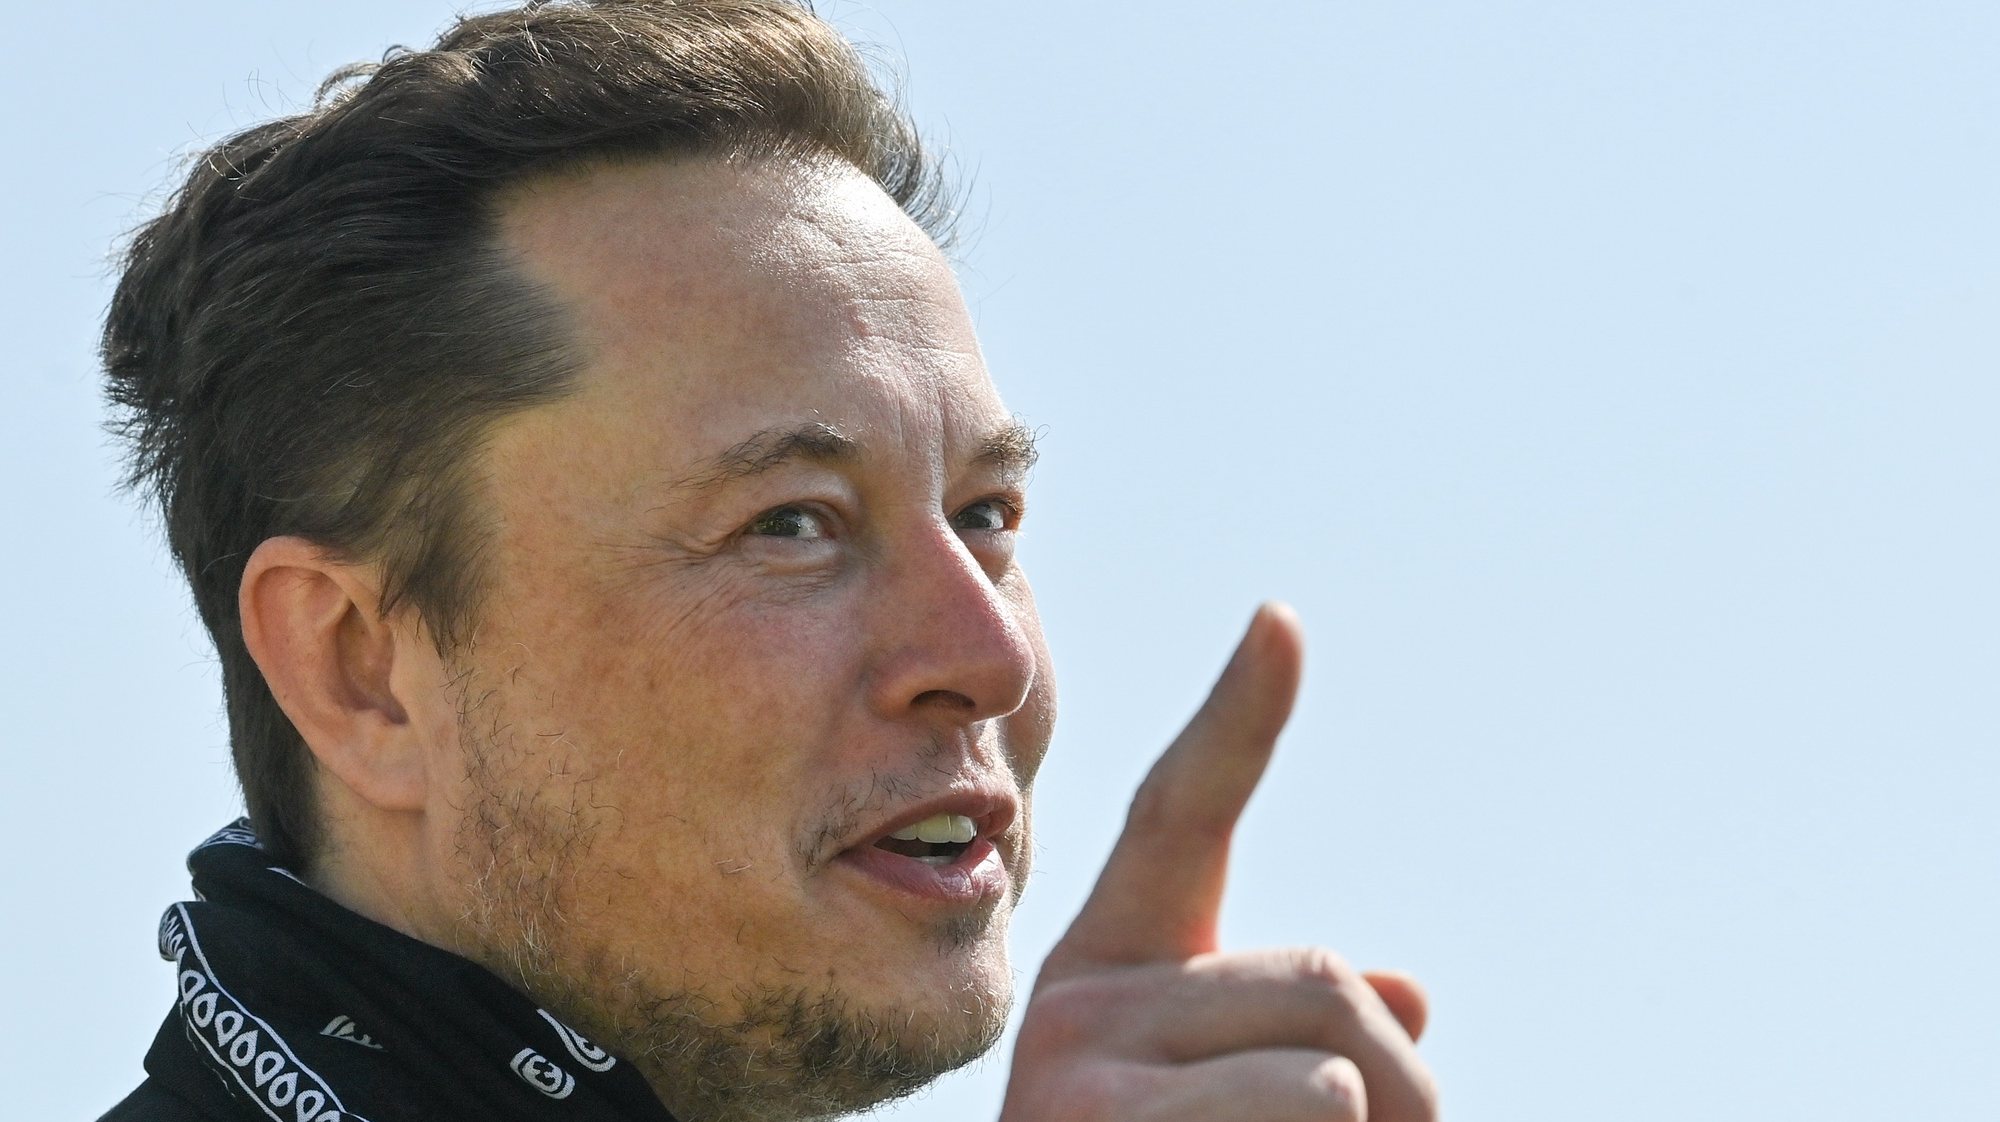 O CEO da Tesla, Elon Musk